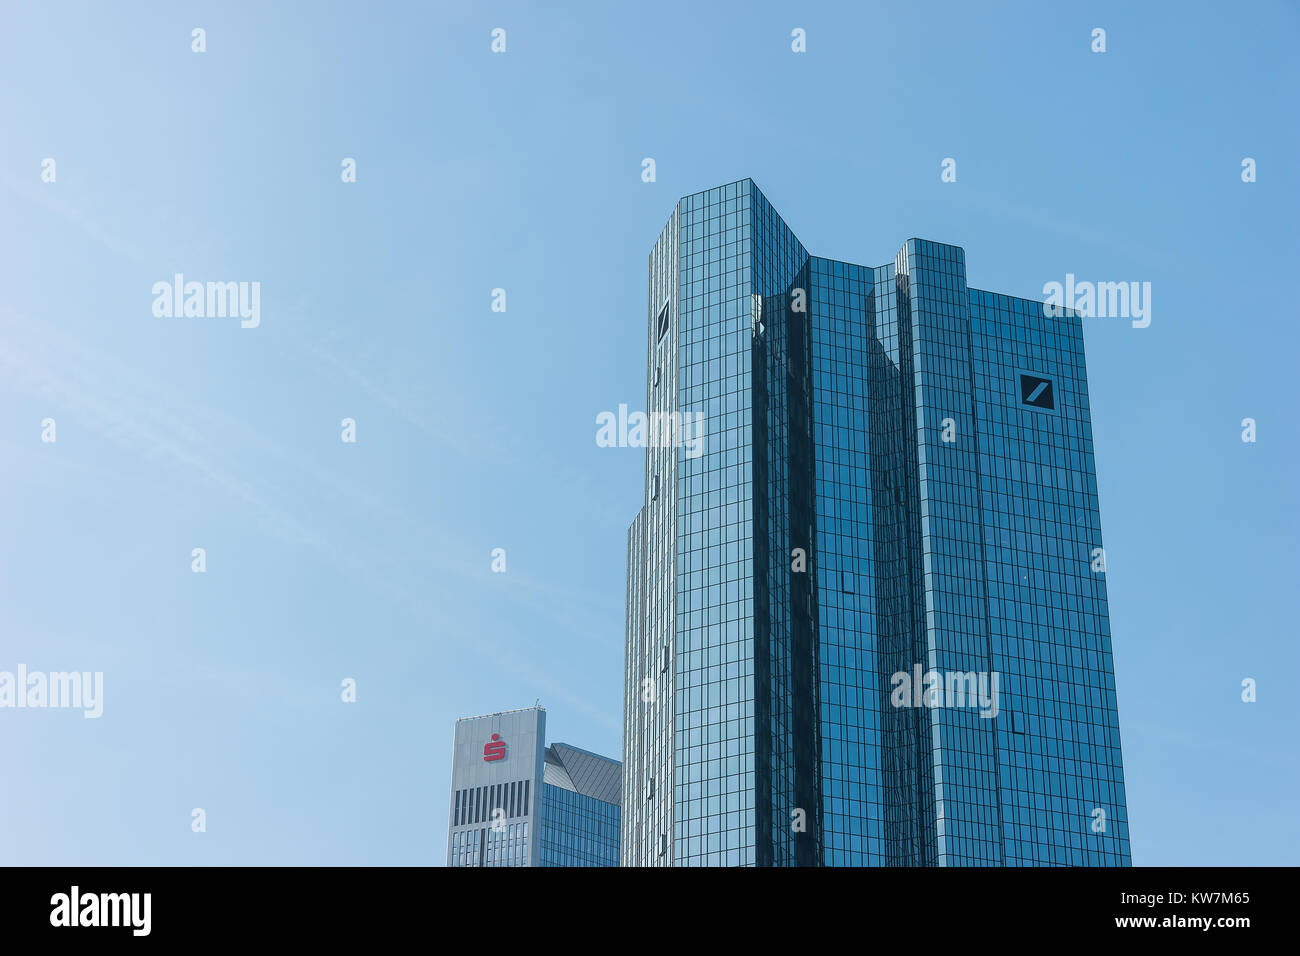 Les tours jumelles de la Deutsche Bank et le groupe financier de la Sparkassen-Finanzgruppe/Banque d'épargne allemande s'envoler dans un ciel bleu. Banque D'Images